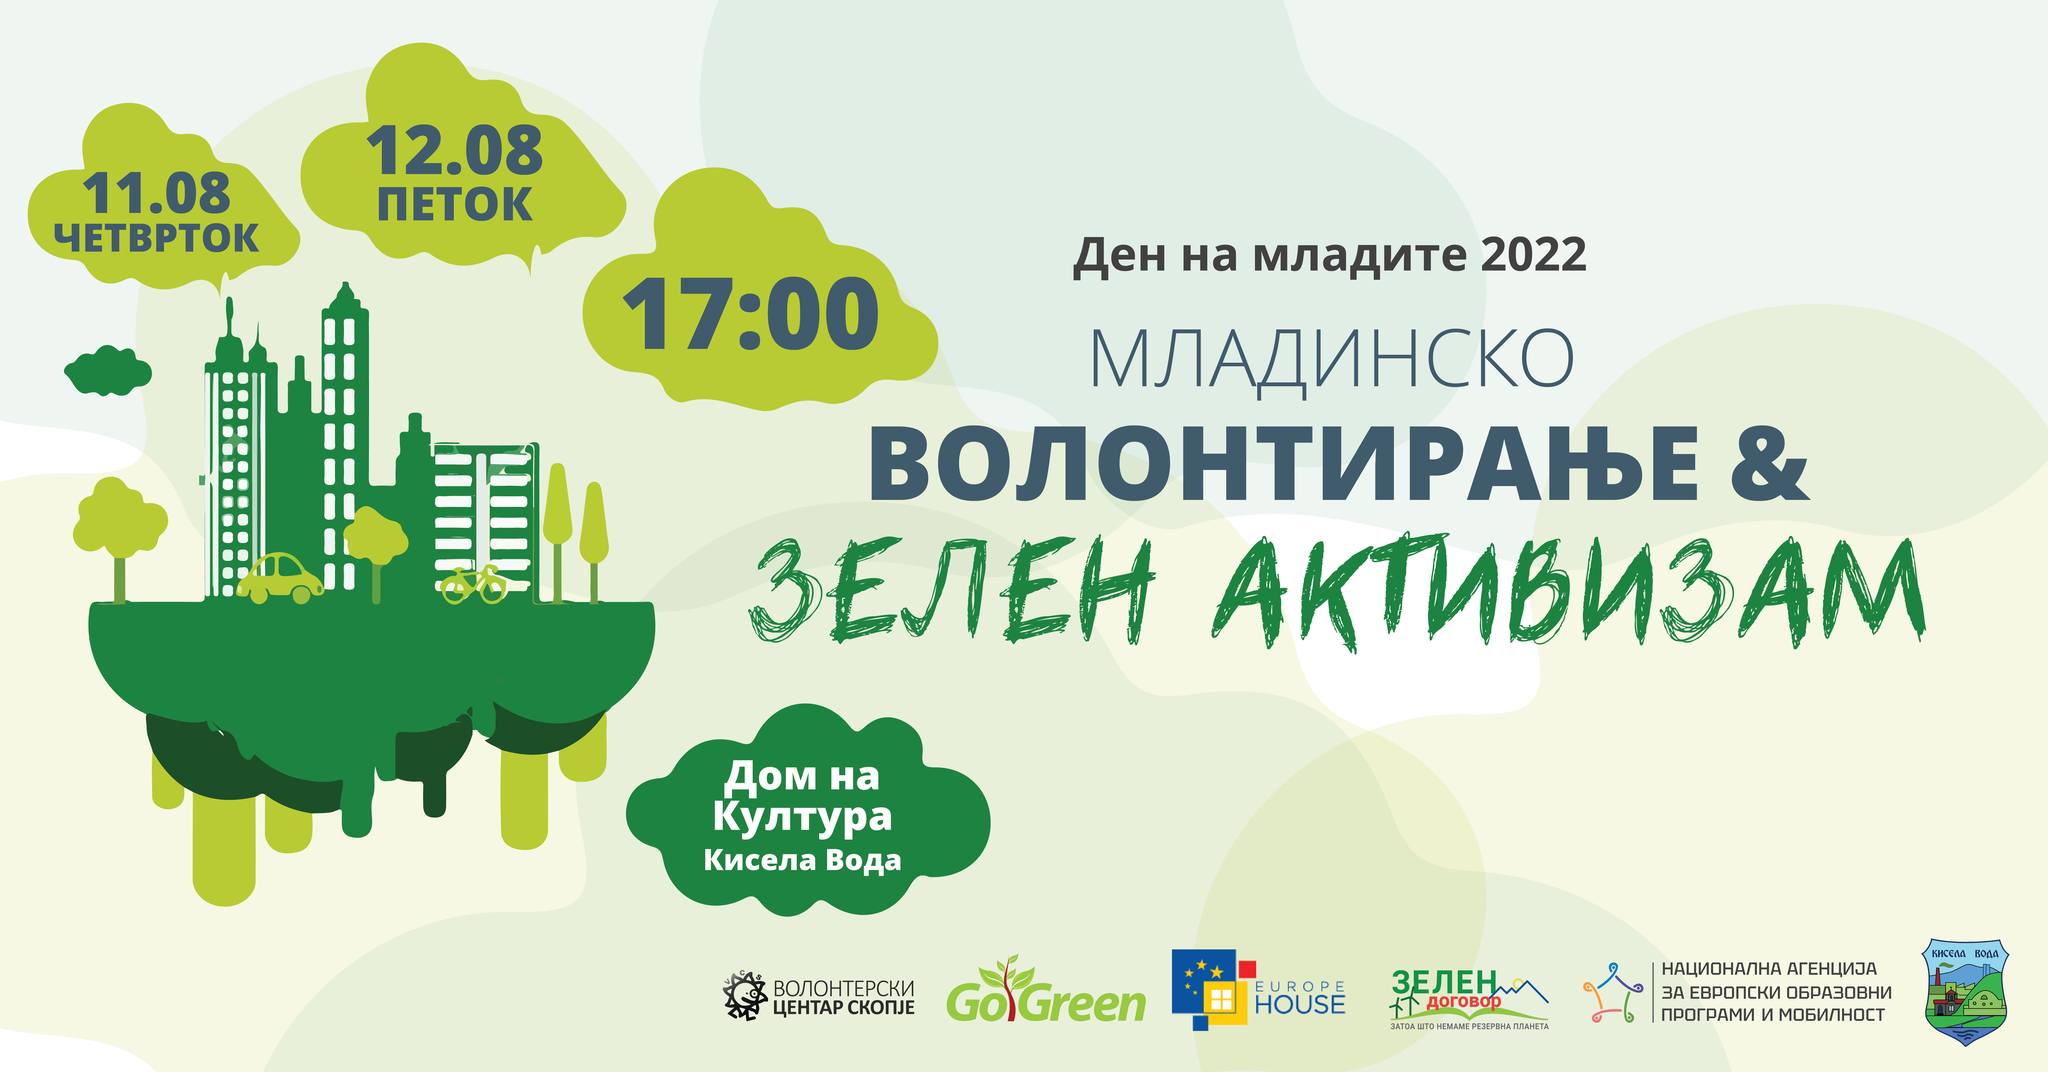 Ден на младите 2022: Младинско волонтирање и Зелен активизам